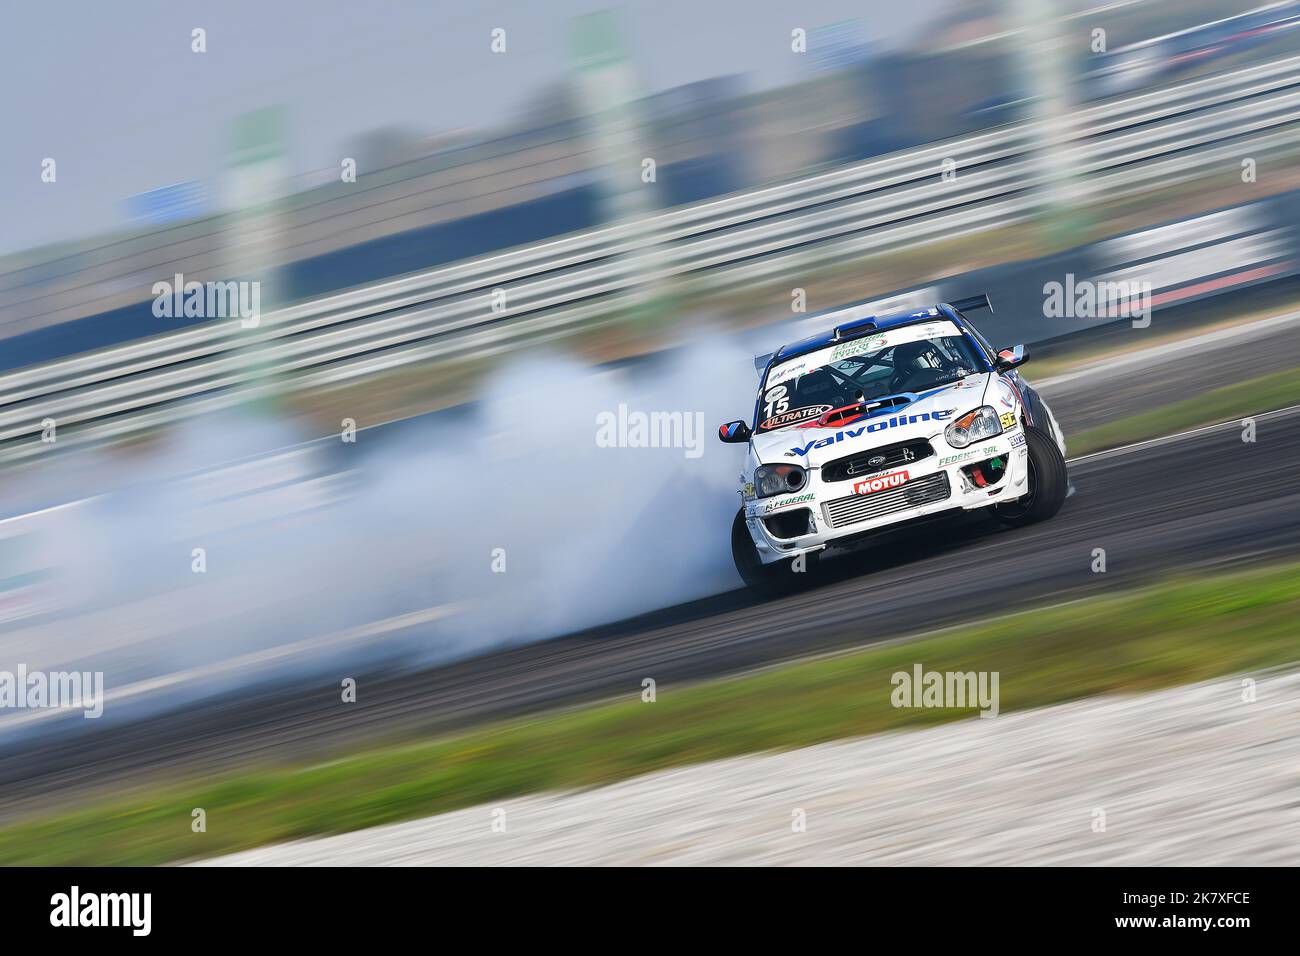 Driftende Motorsportkonkurrenz ein Spektakel auf der ganzen Seite, rauchende Reifen und Gegenlenkung Stockfoto